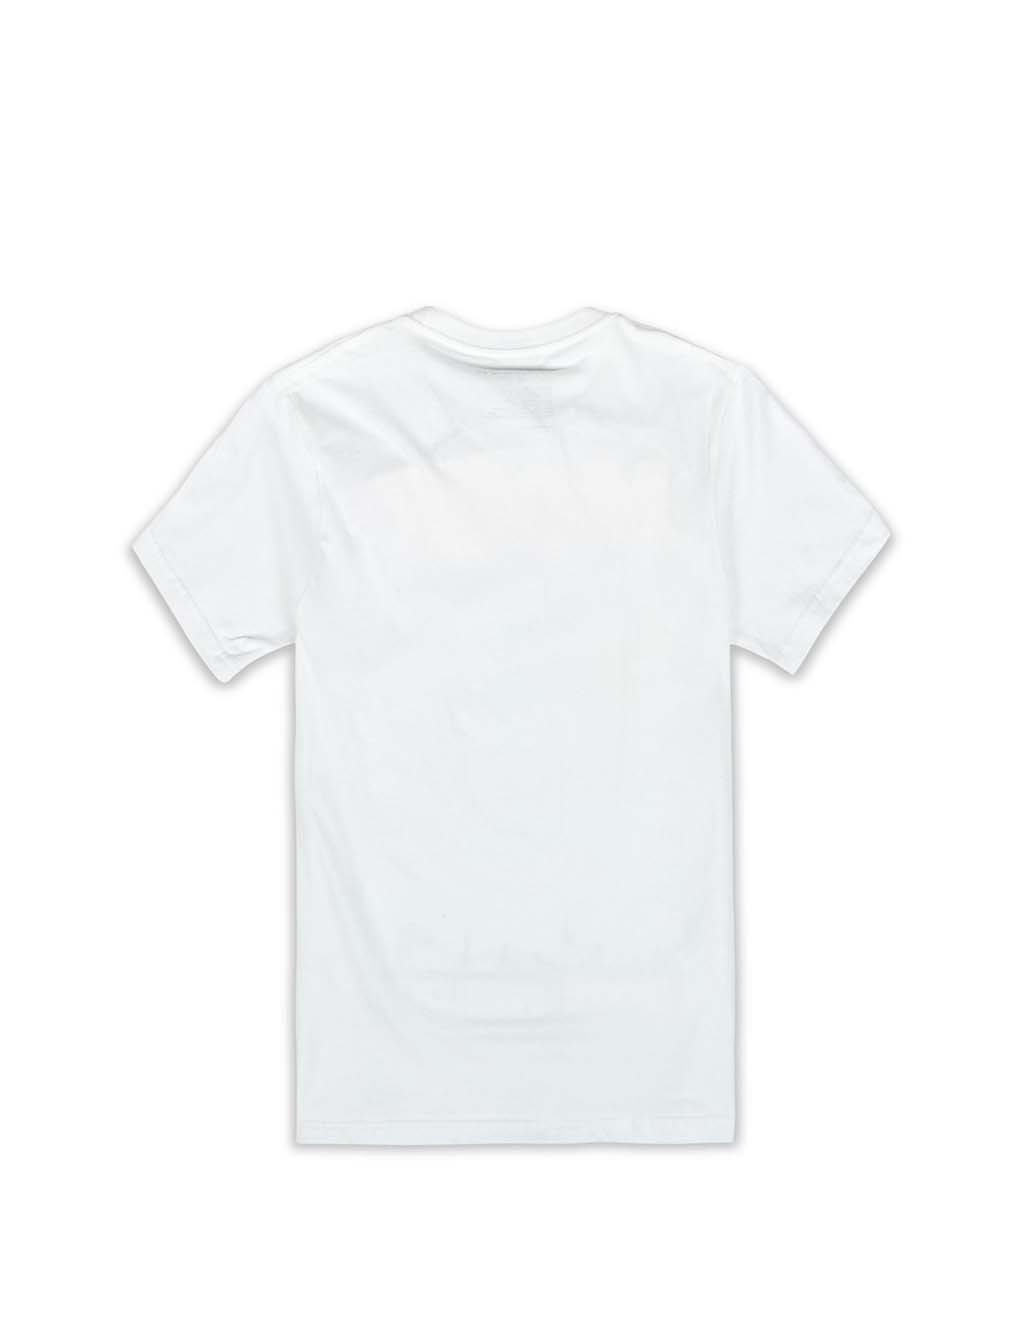 HUSTLER® Palm Tree T-Shirt- White- Back